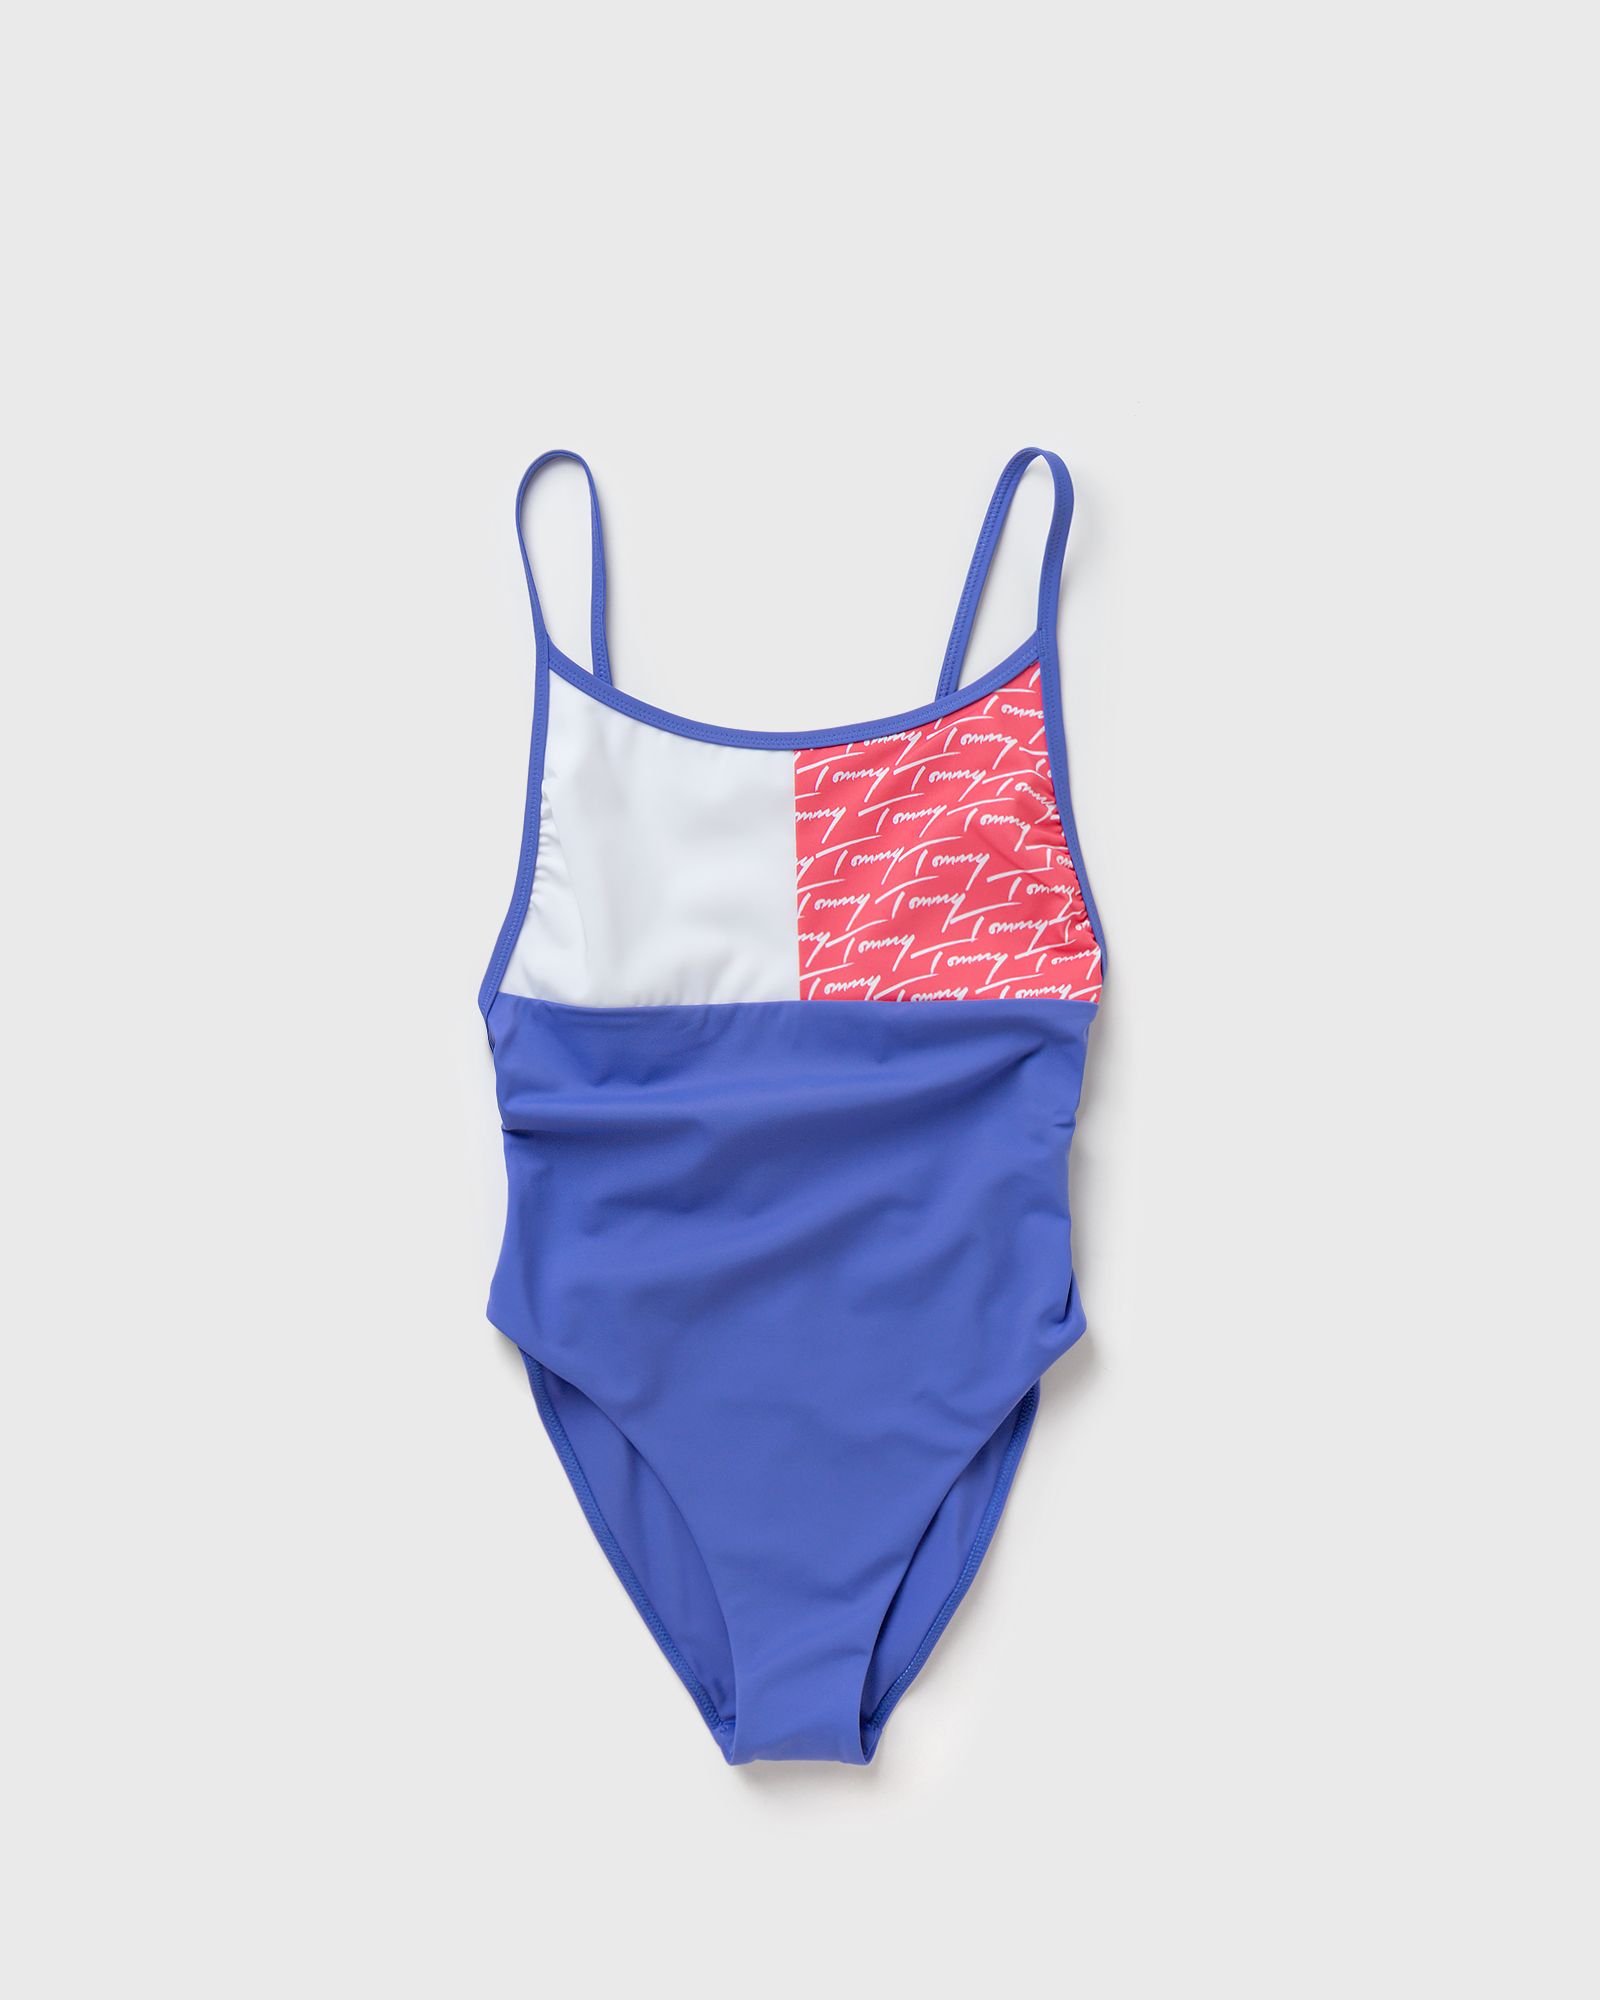 Tommy Hilfiger - cheeky one piece women swimwear blue in größe:xs